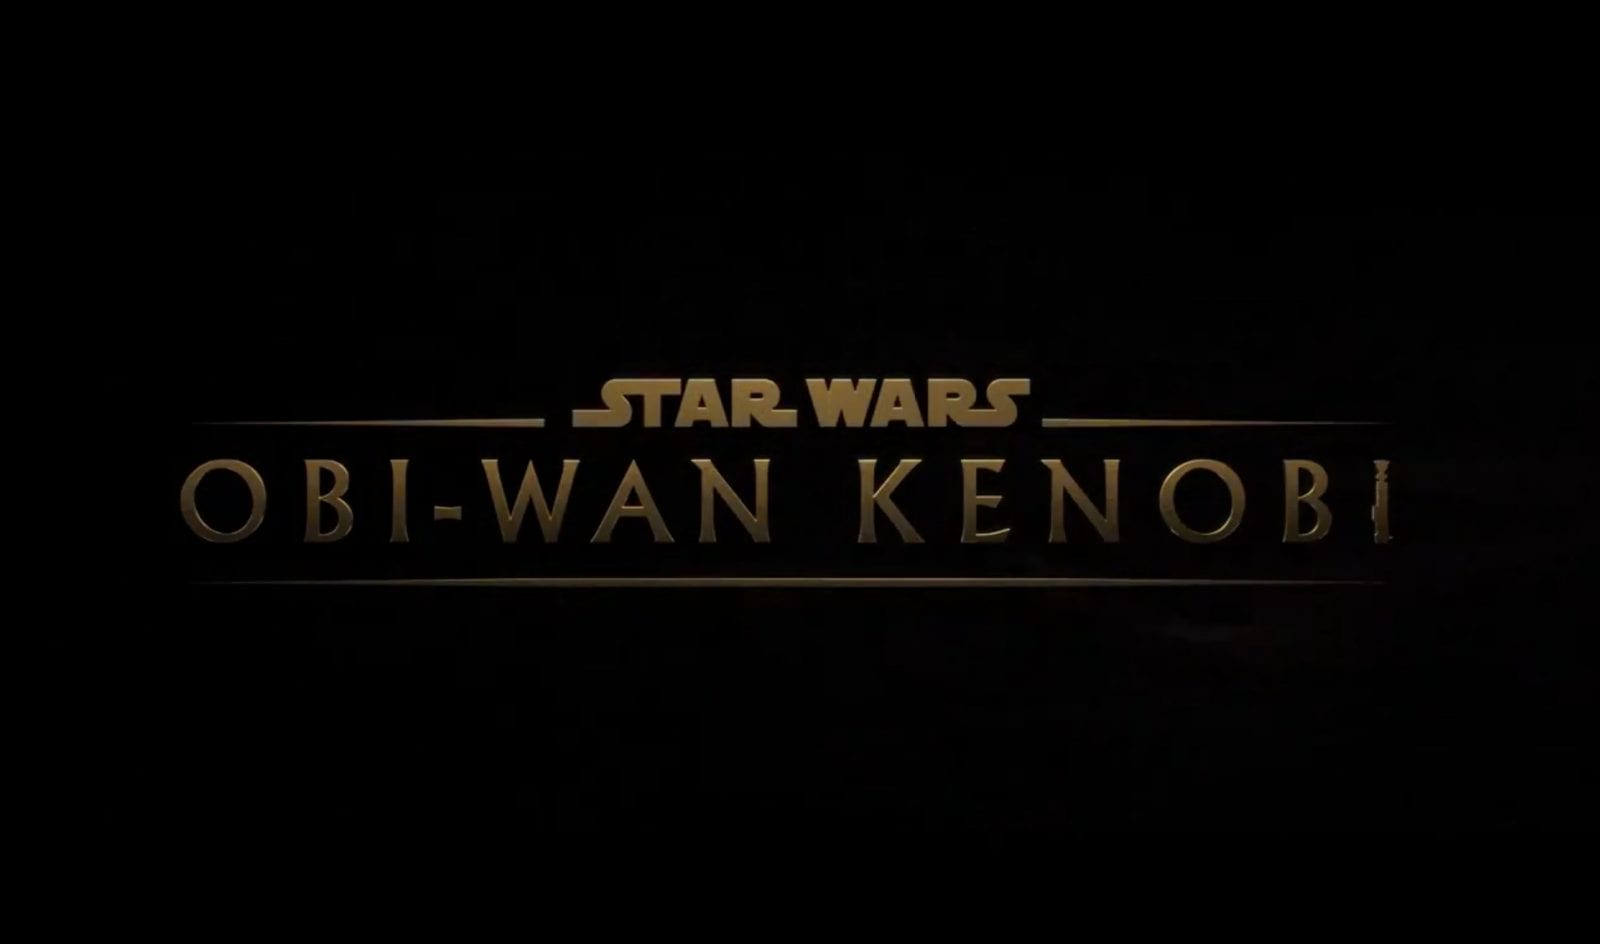 Logo de Star Wars Obi-wan kenobi